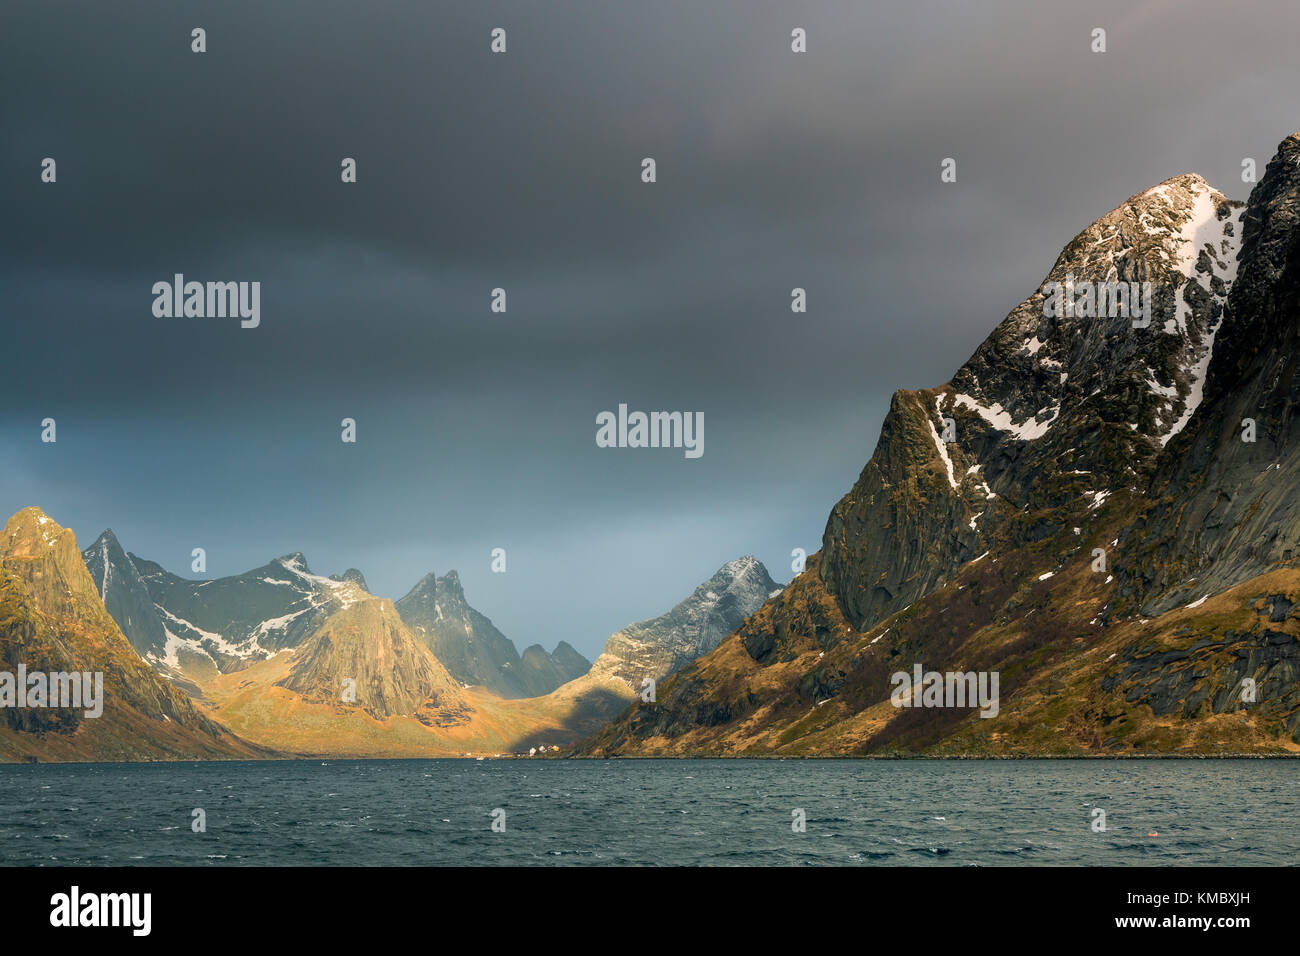 Nuages sombres au-dessus des montagnes accidentées, Reine, Lofoten, Norvège Banque D'Images